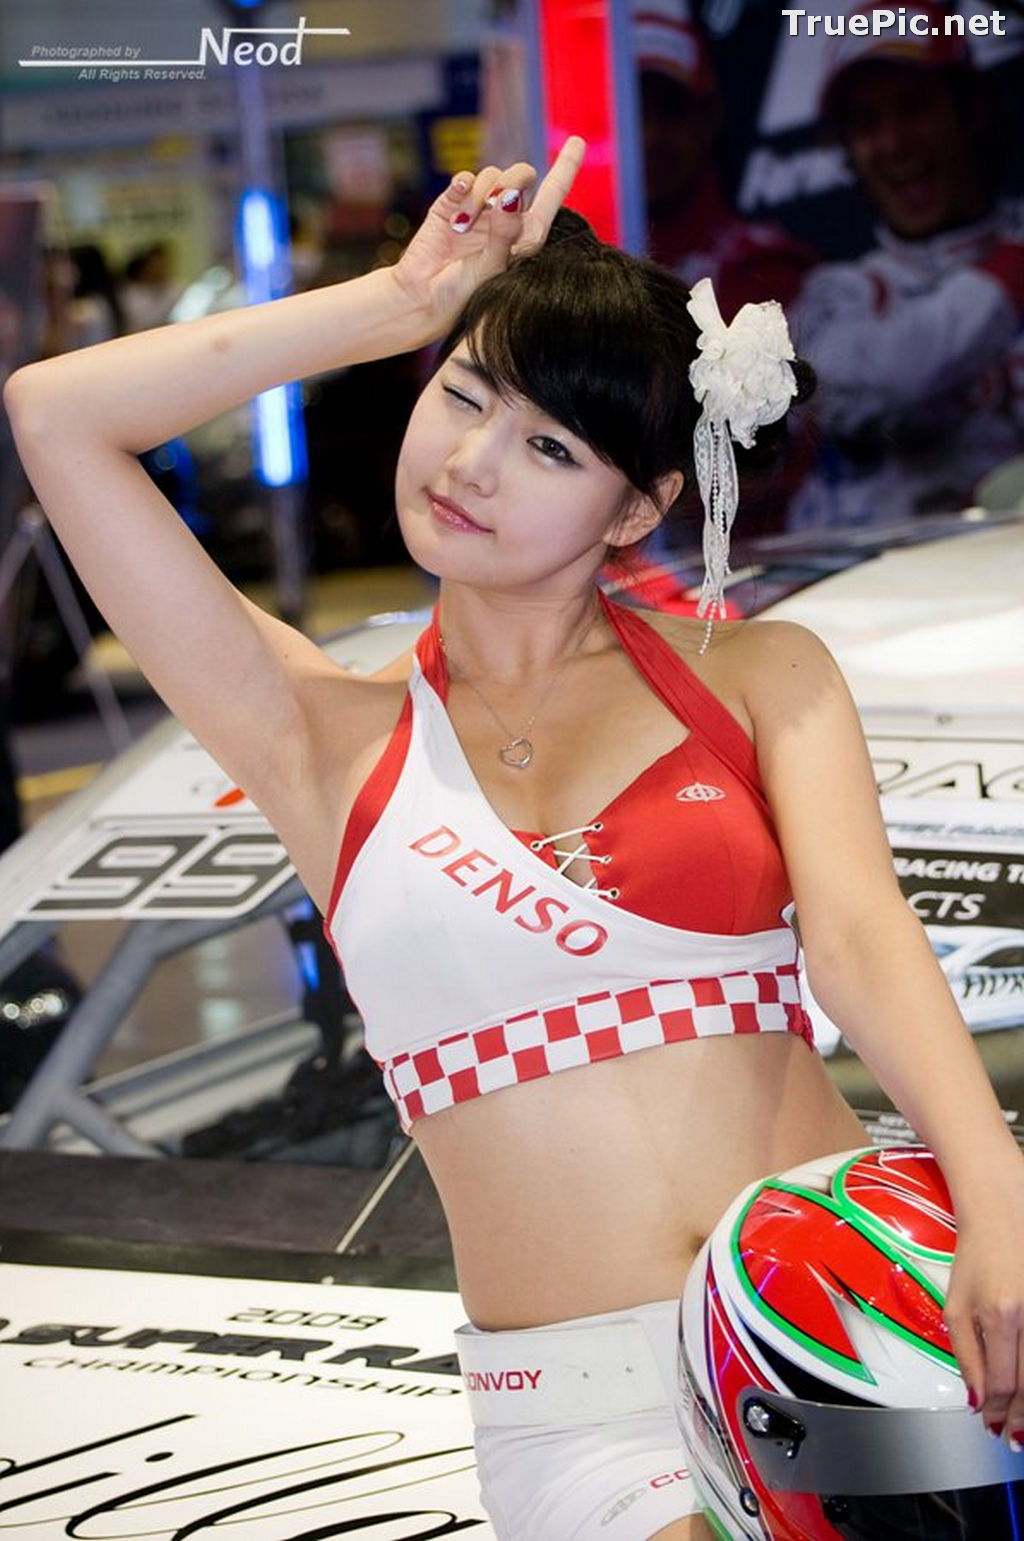 Image Best Beautiful Images Of Korean Racing Queen Han Ga Eun #4 - TruePic.net - Picture-52